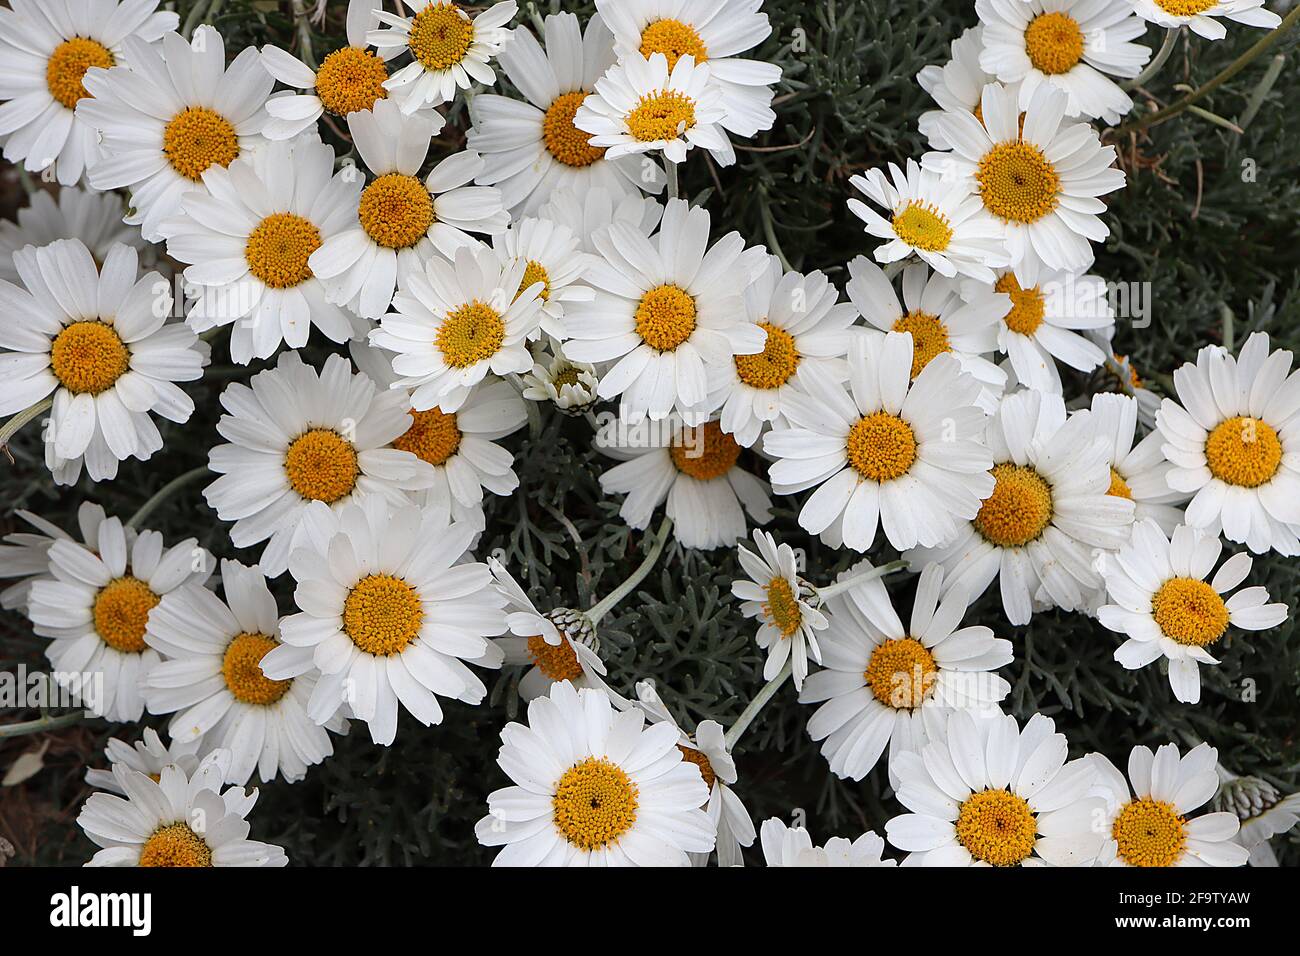 Rhodanthemum hosmariense ‘Cascester’ Marokkanische Gänseblümchen – weiße Gänseblümchen-ähnliche Blüten mit gelb-braunem Zentrum, April, England, Großbritannien Stockfoto